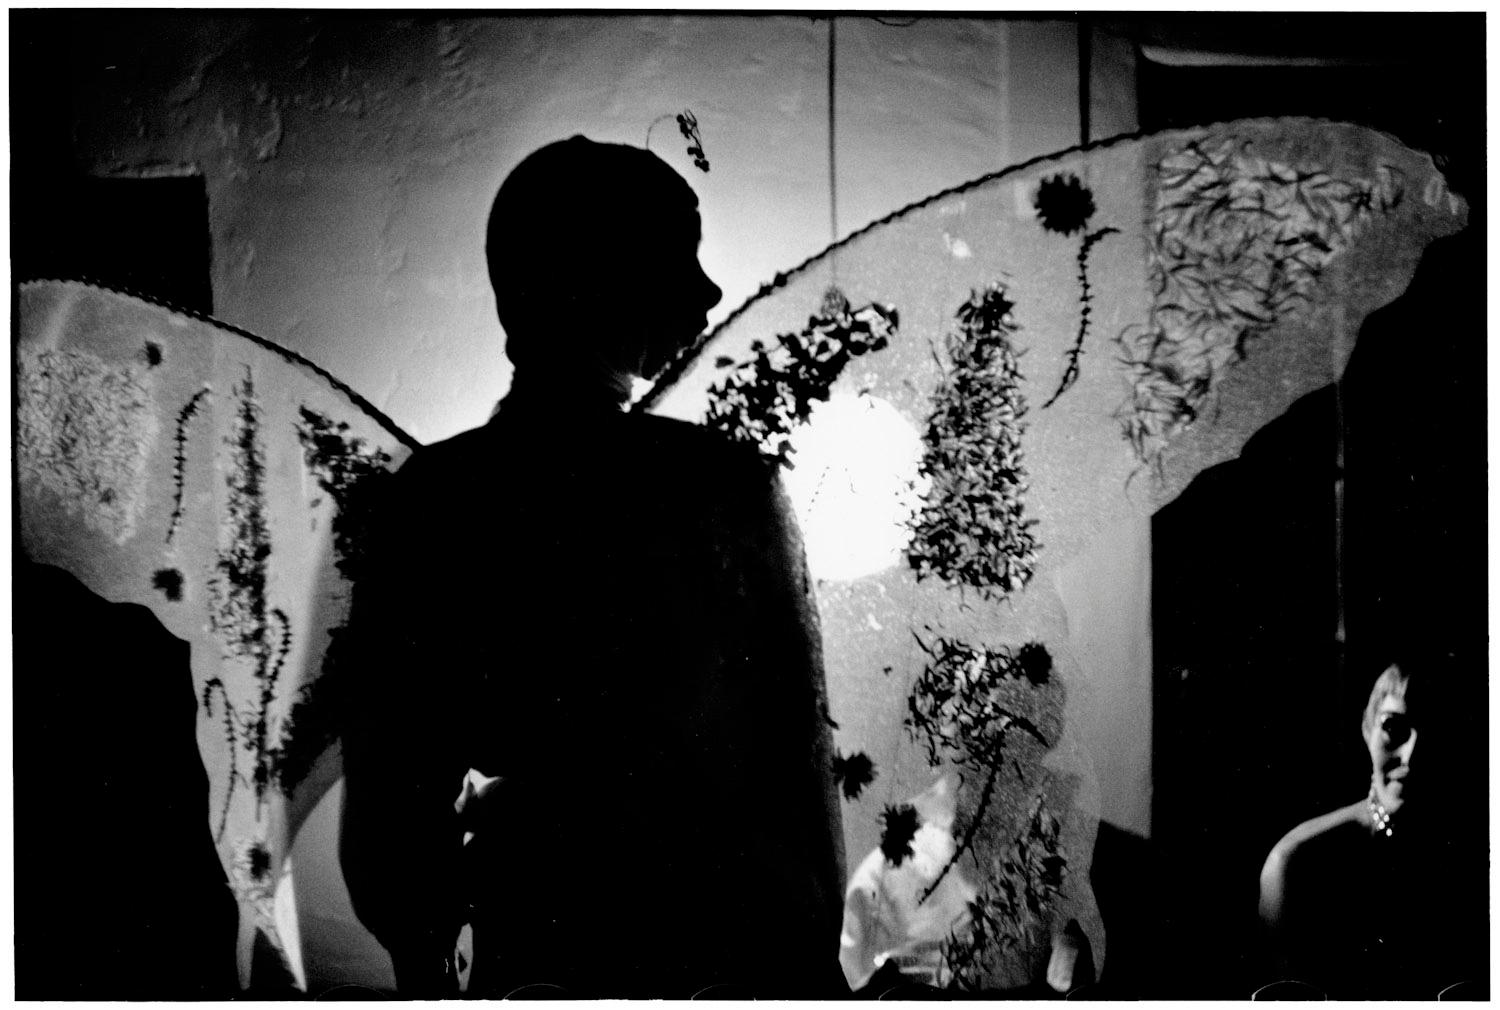 USA, Los Angeles, Californie 1955 - Elliott Erwitt (Photographie en noir et blanc)
Signé, inscrit avec le titre et daté sur l'étiquette de l'artiste qui l'accompagne
Tirage à la gélatine argentique, imprimé ultérieurement

Disponible en quatre